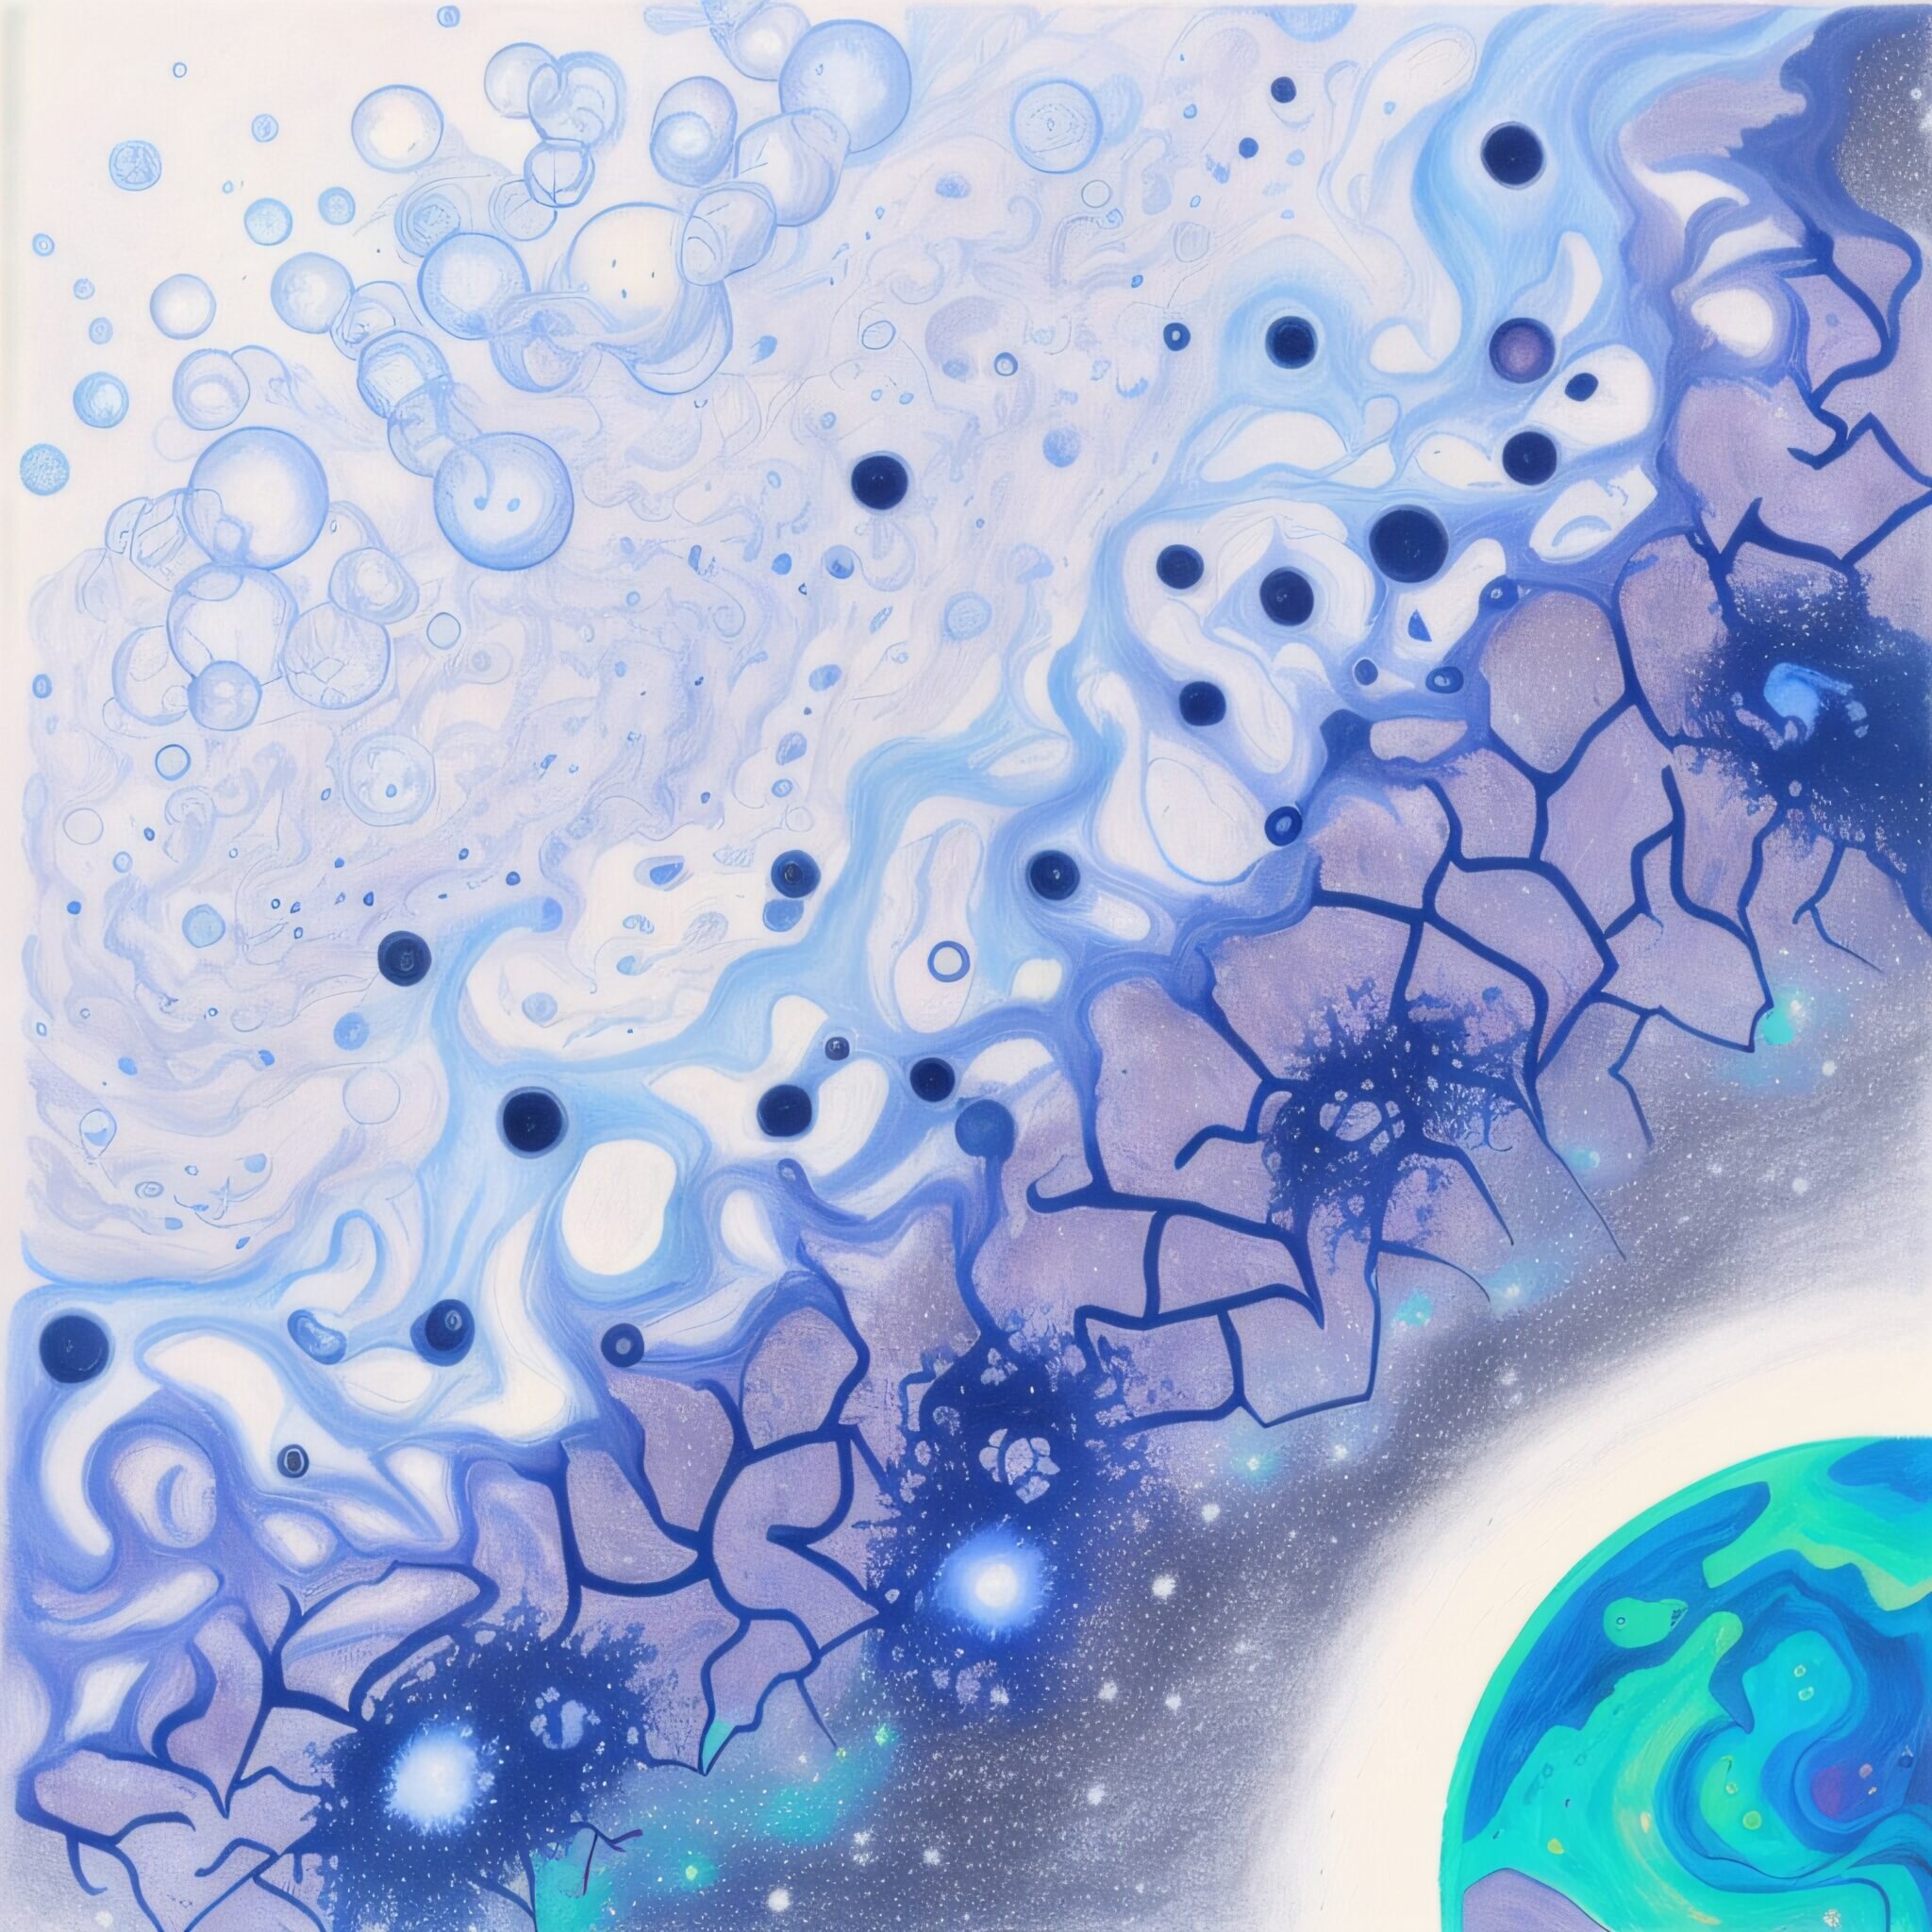 Representación artística de la materia del universo primitivo fusionándose lentamente en grandes estructuras cósmicas en el universo tardío. Crédito de la imagen: Minh Nguyen, Universidad de Michigan y Thanh Nguyen (cónyuge).